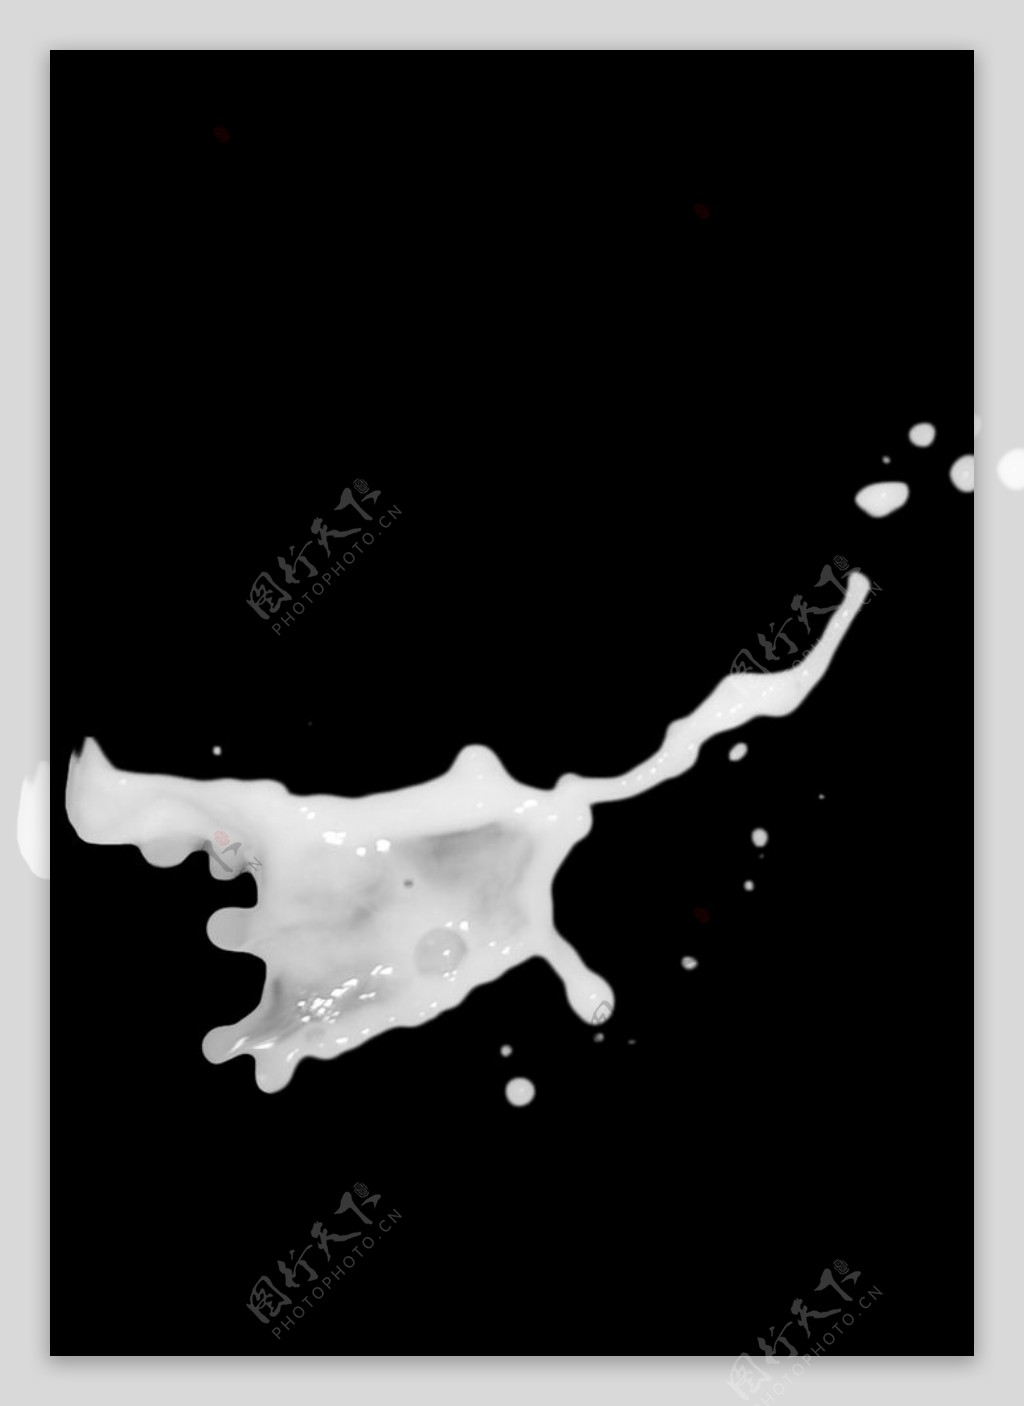 牛奶水纹图片